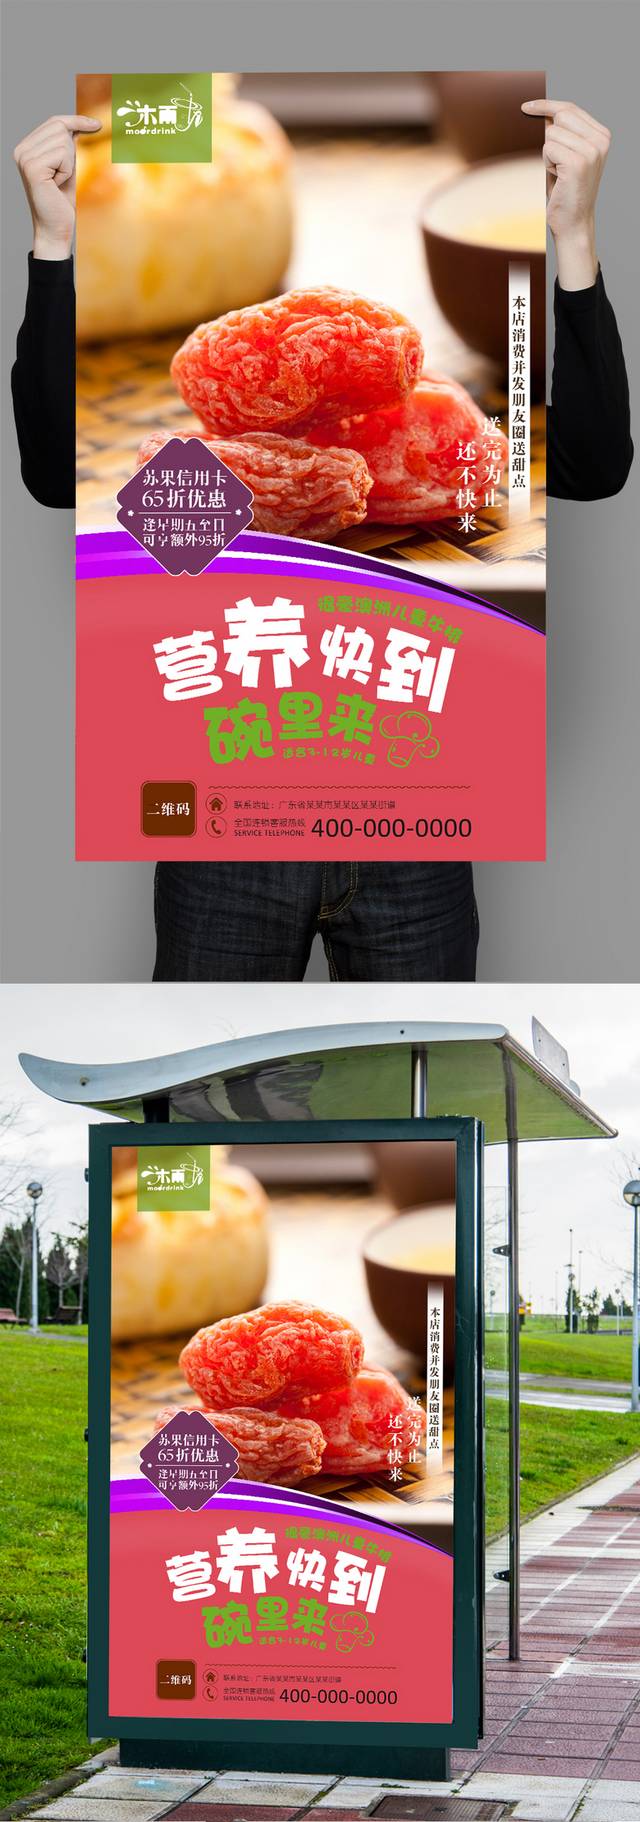 高清杨梅美食促销海报设计